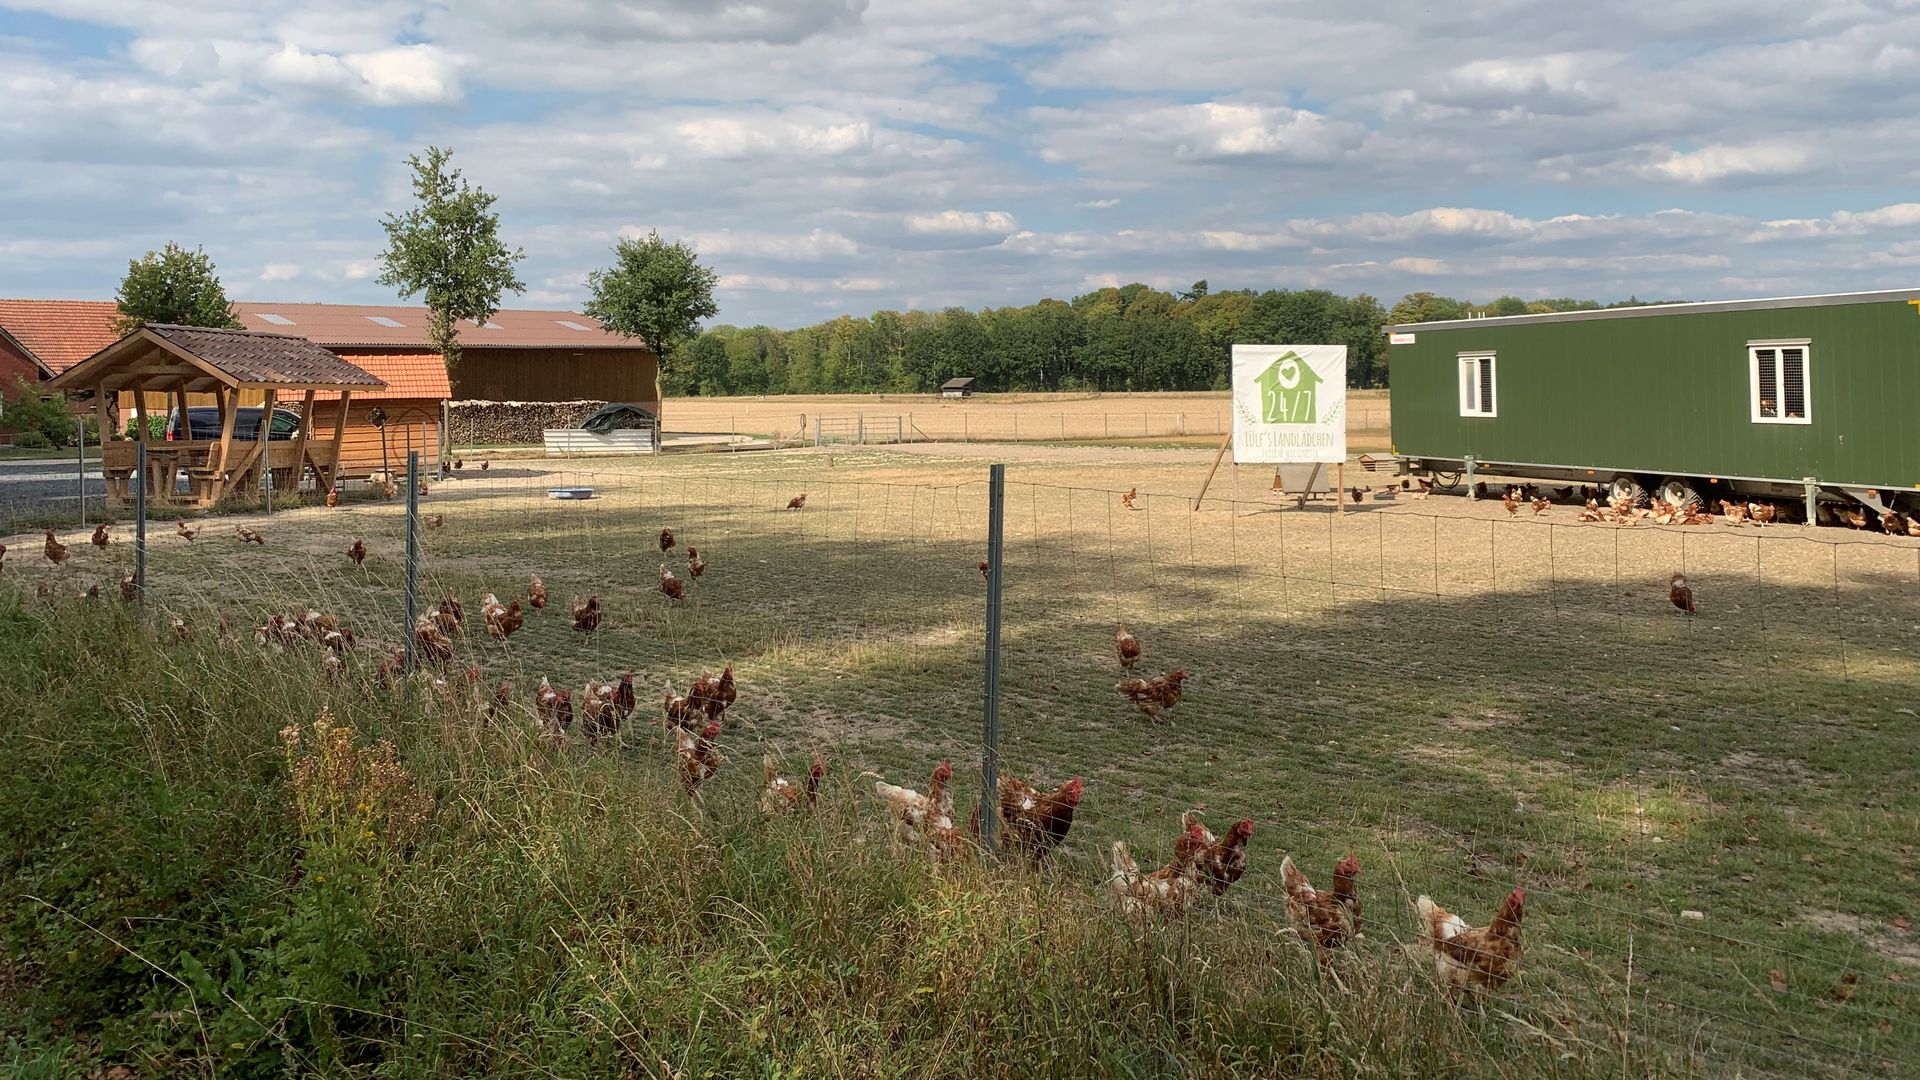 Rast machen am Hühnermobil der Landwirtsfamilie Lülf in Havixbeck: Das können jetzt Spaziergänger, Radfahrer und Wanderer. Foto Konstanze Lülf